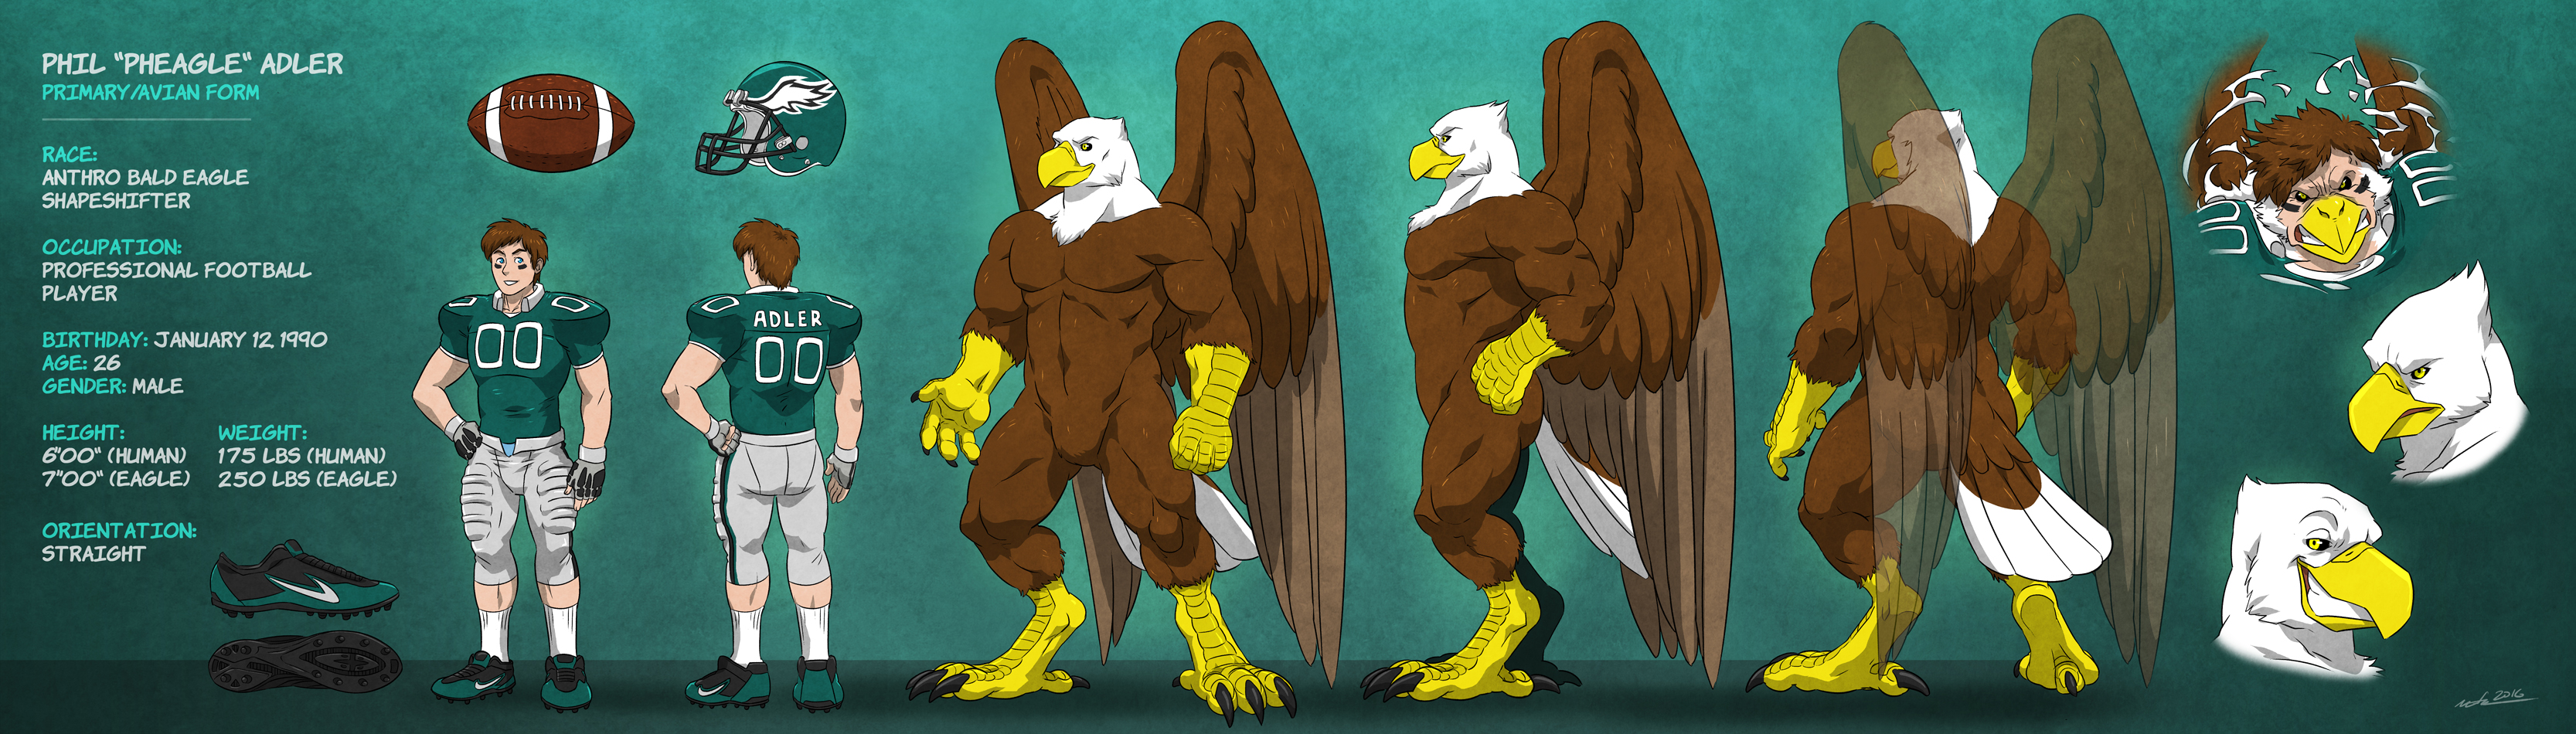 Phil "Pheagle" Adler - Eagle Form: Naked Sheet. 